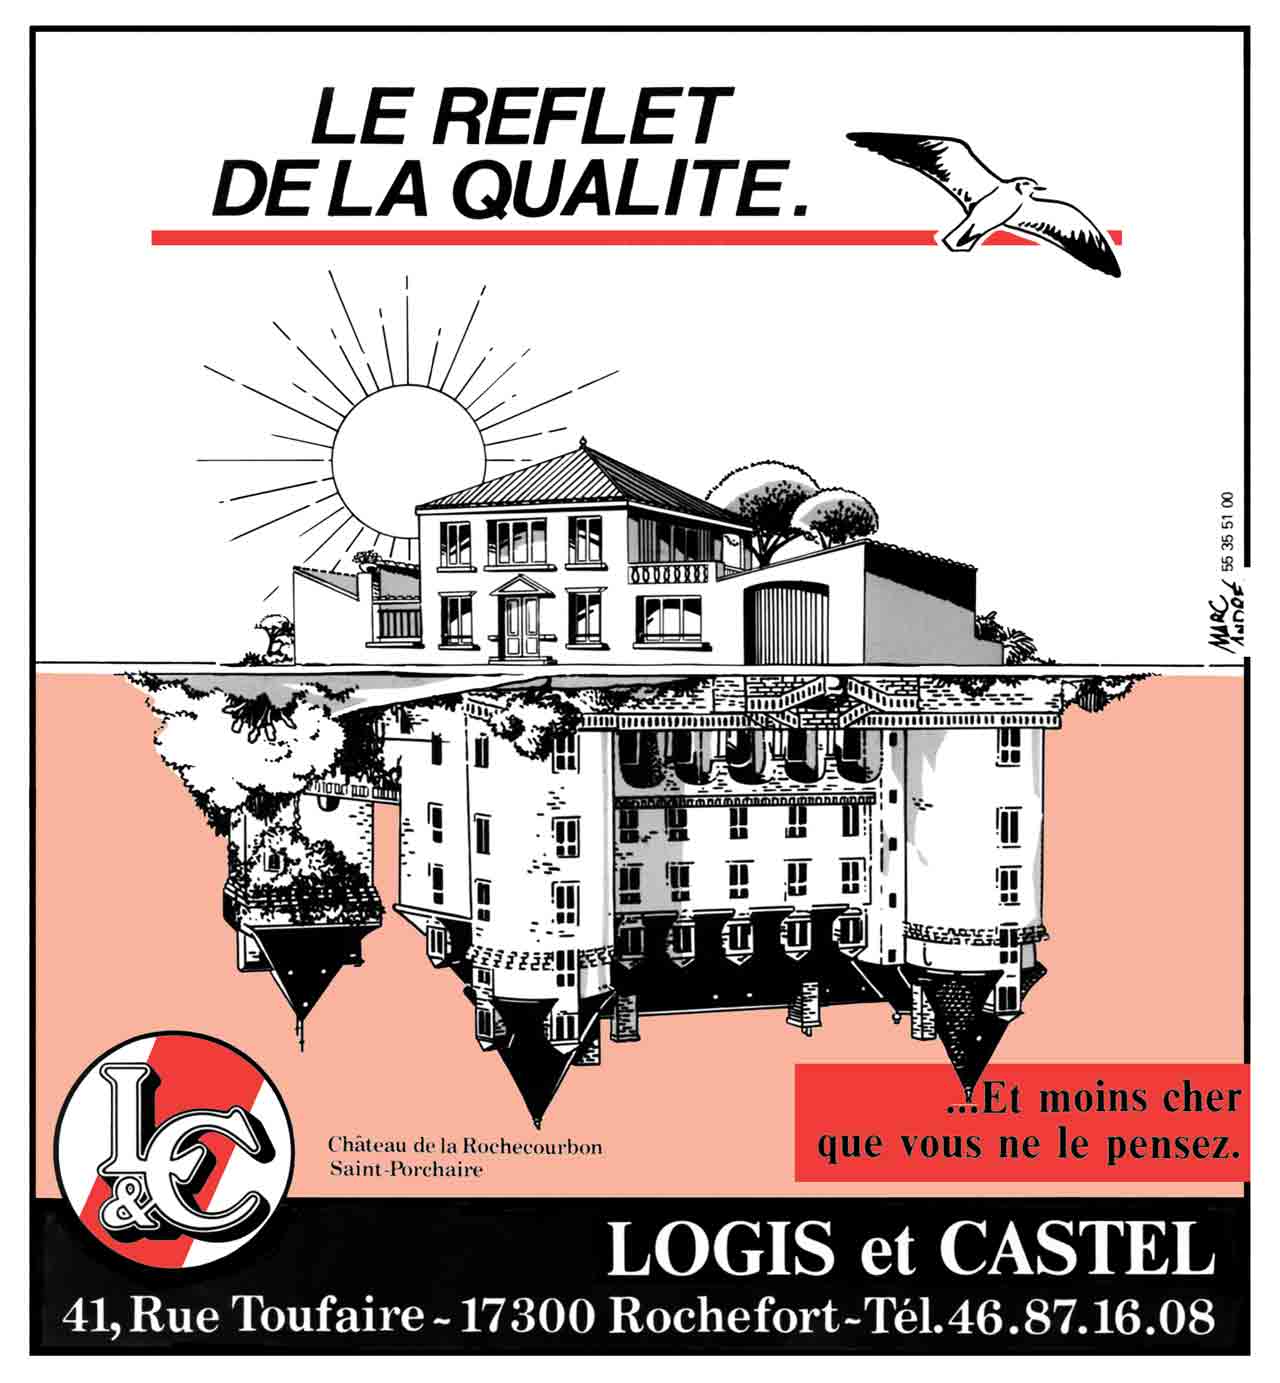 Annonce-presse Le reflet de la qualité 1989 Logis & Castel agence de Rochefort Chateau de la Rochecourbon à Saint-Porchaire.